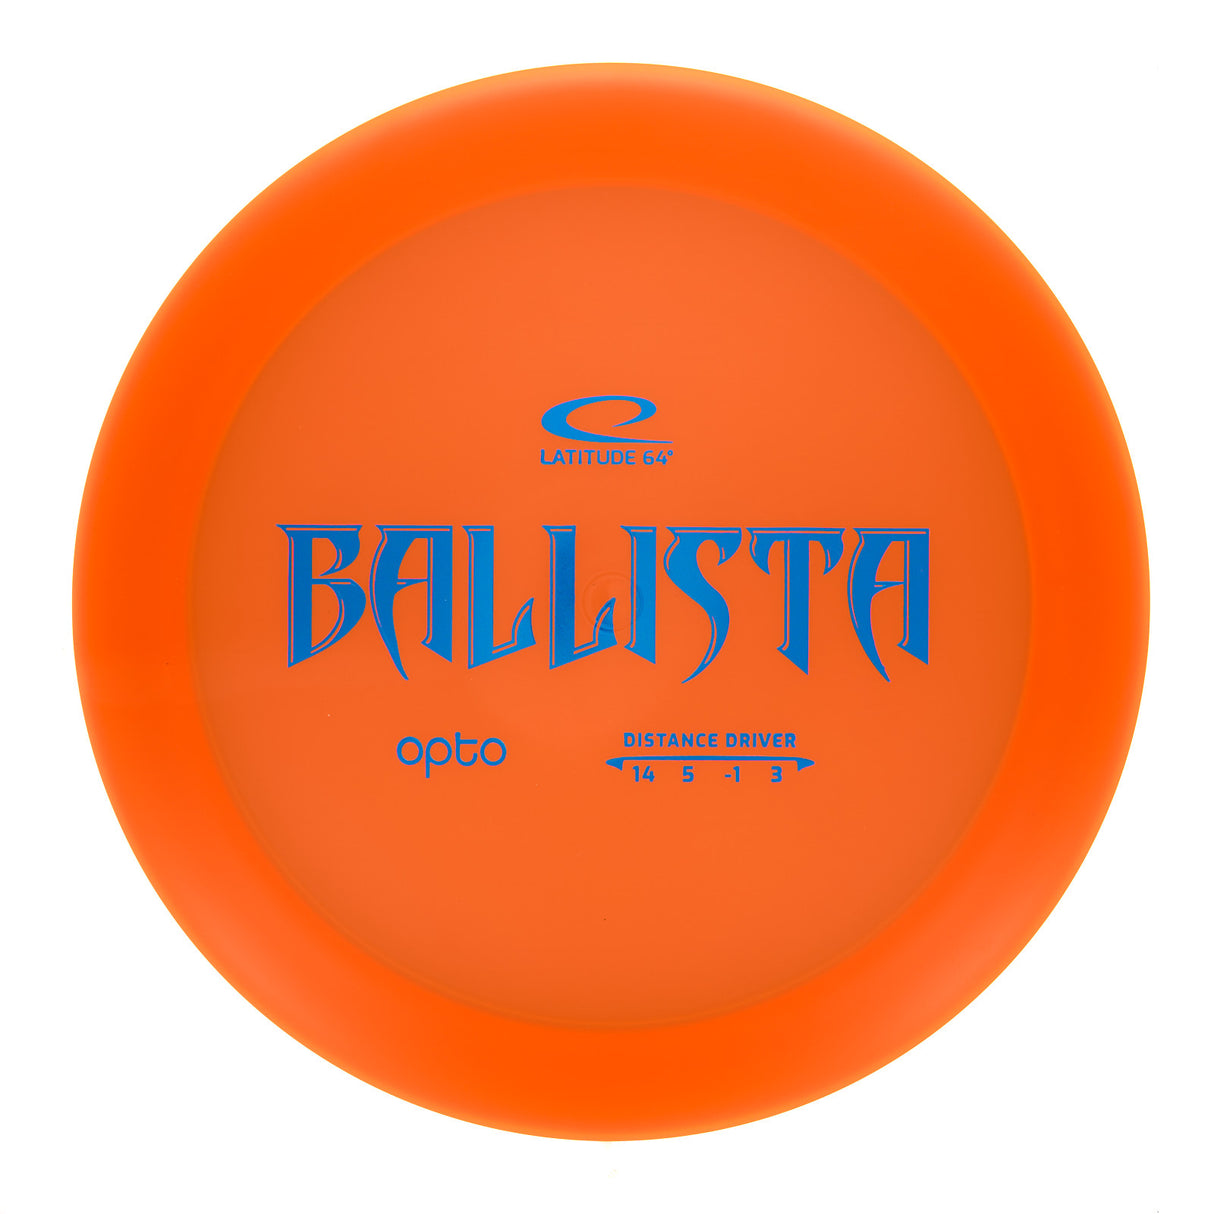 Latitude 64 Ballista - Opto 171g | Style 0001